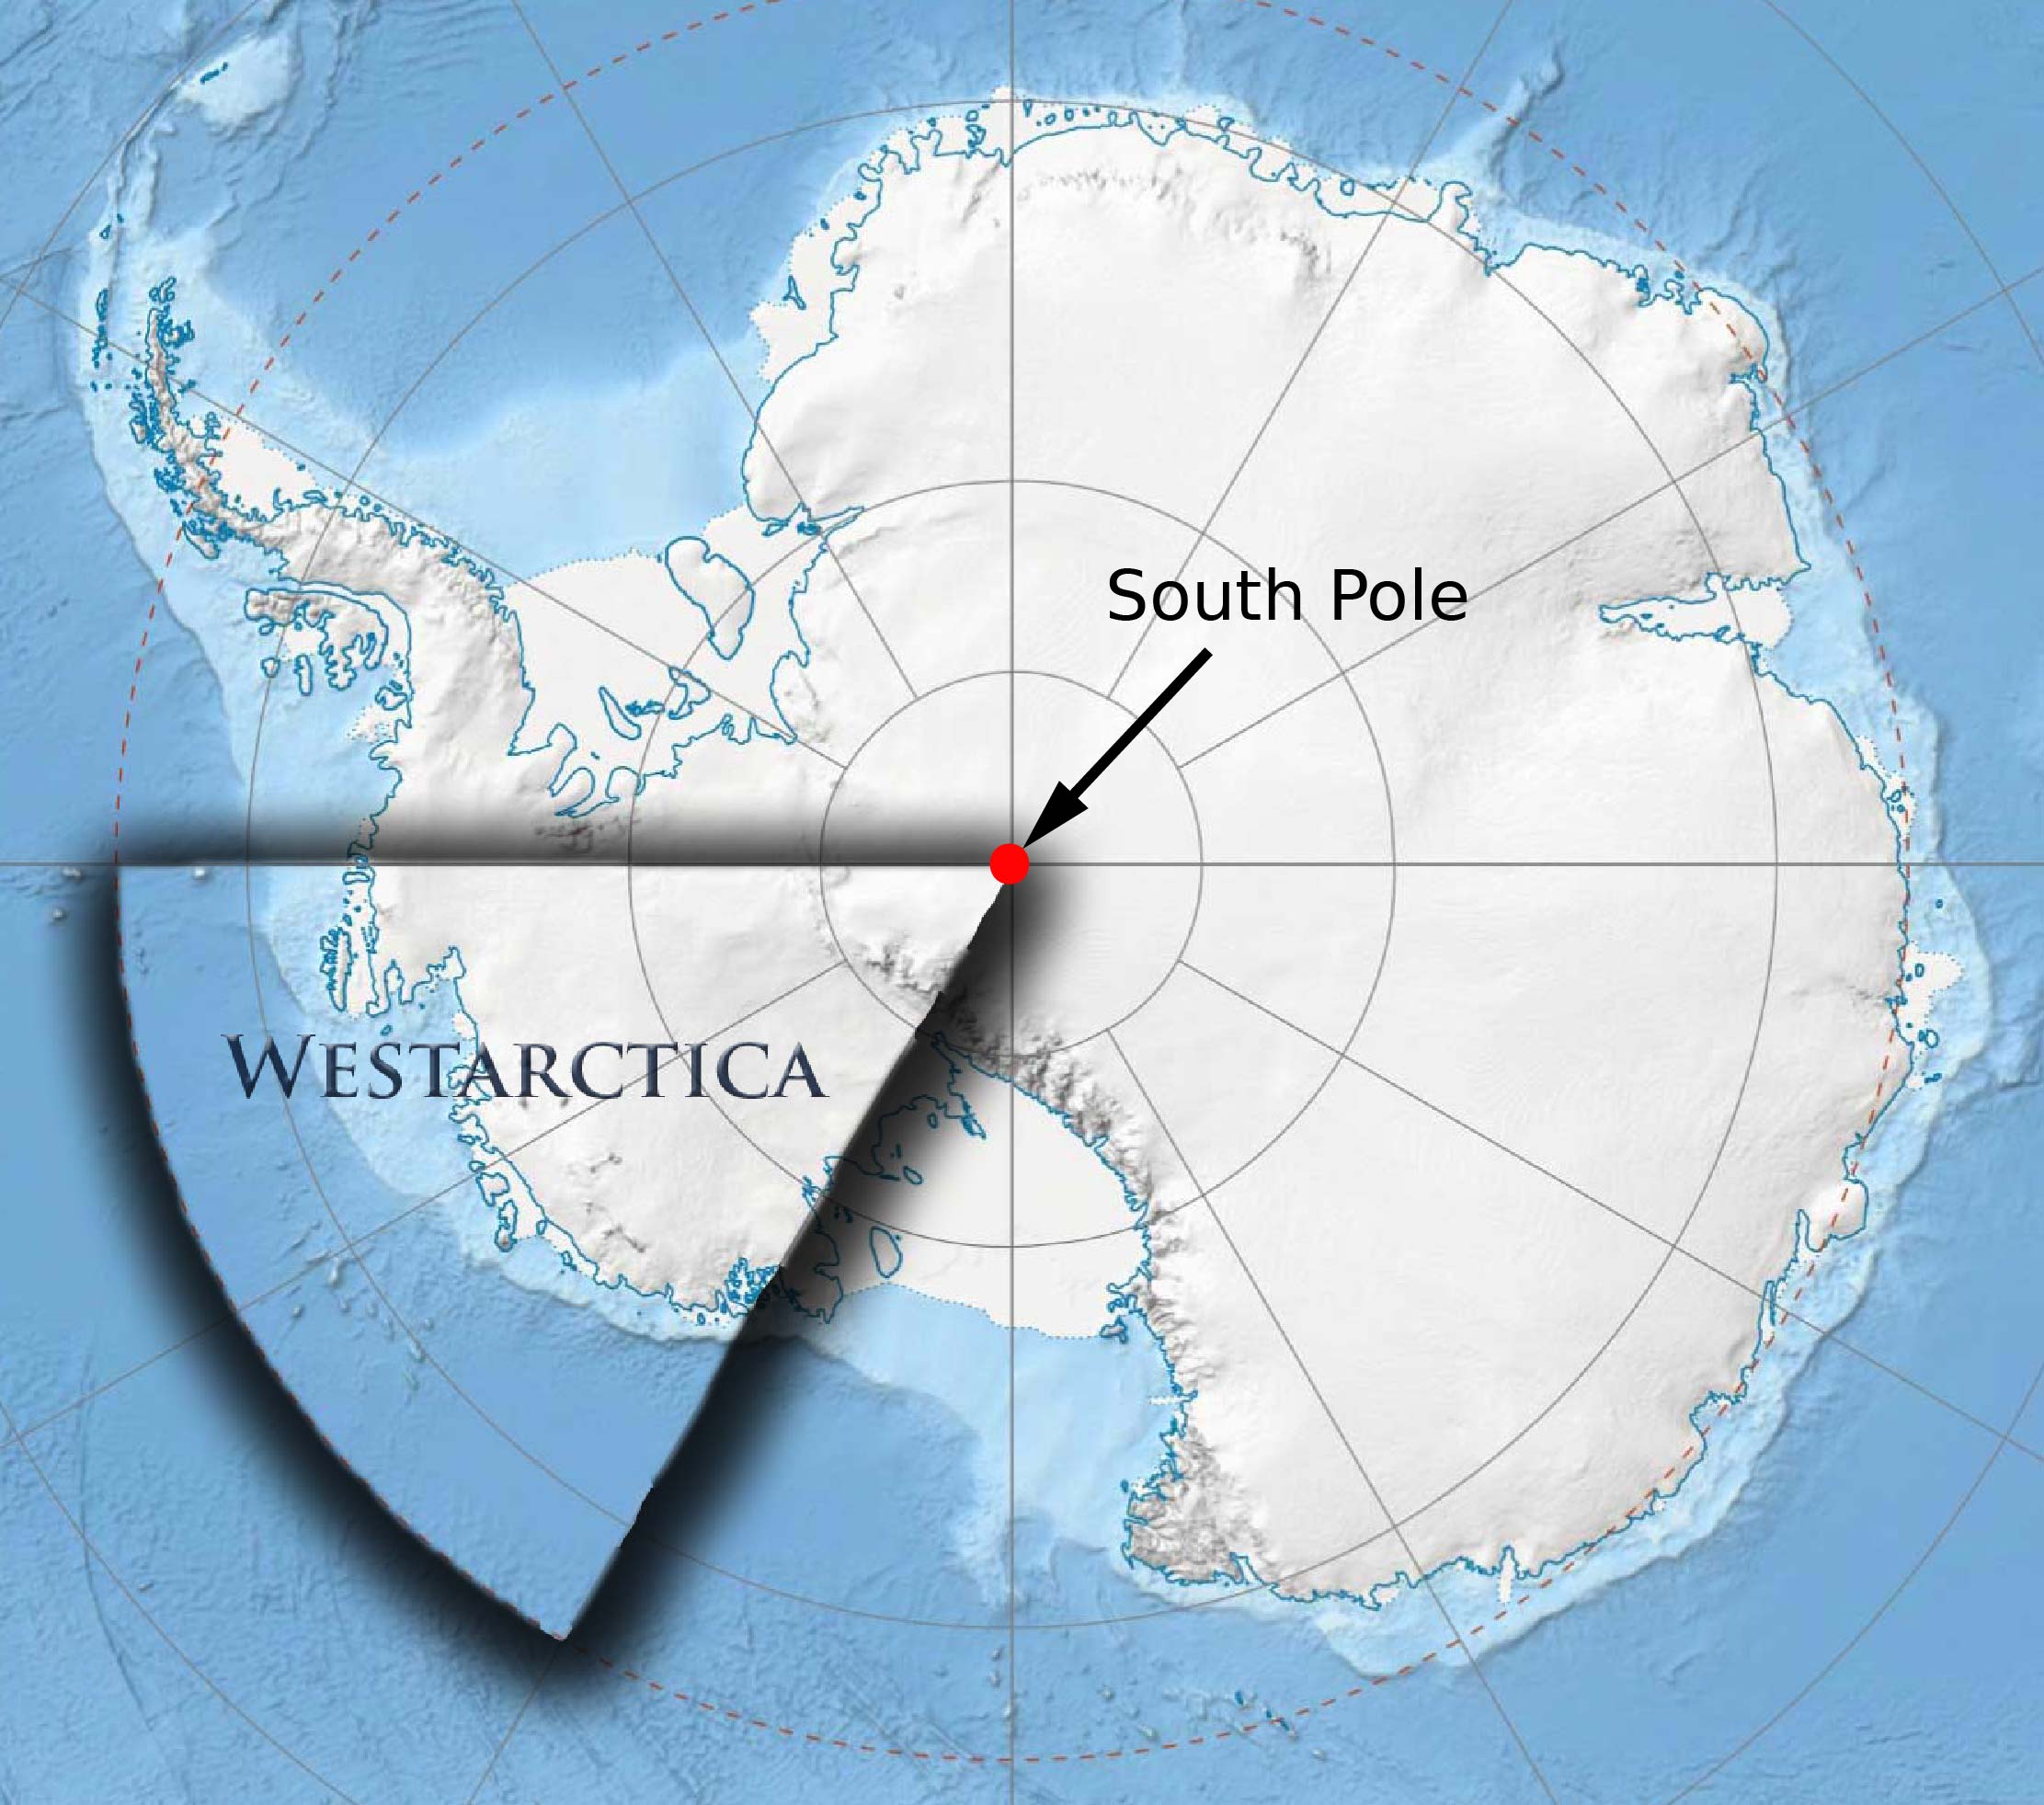 South pole-